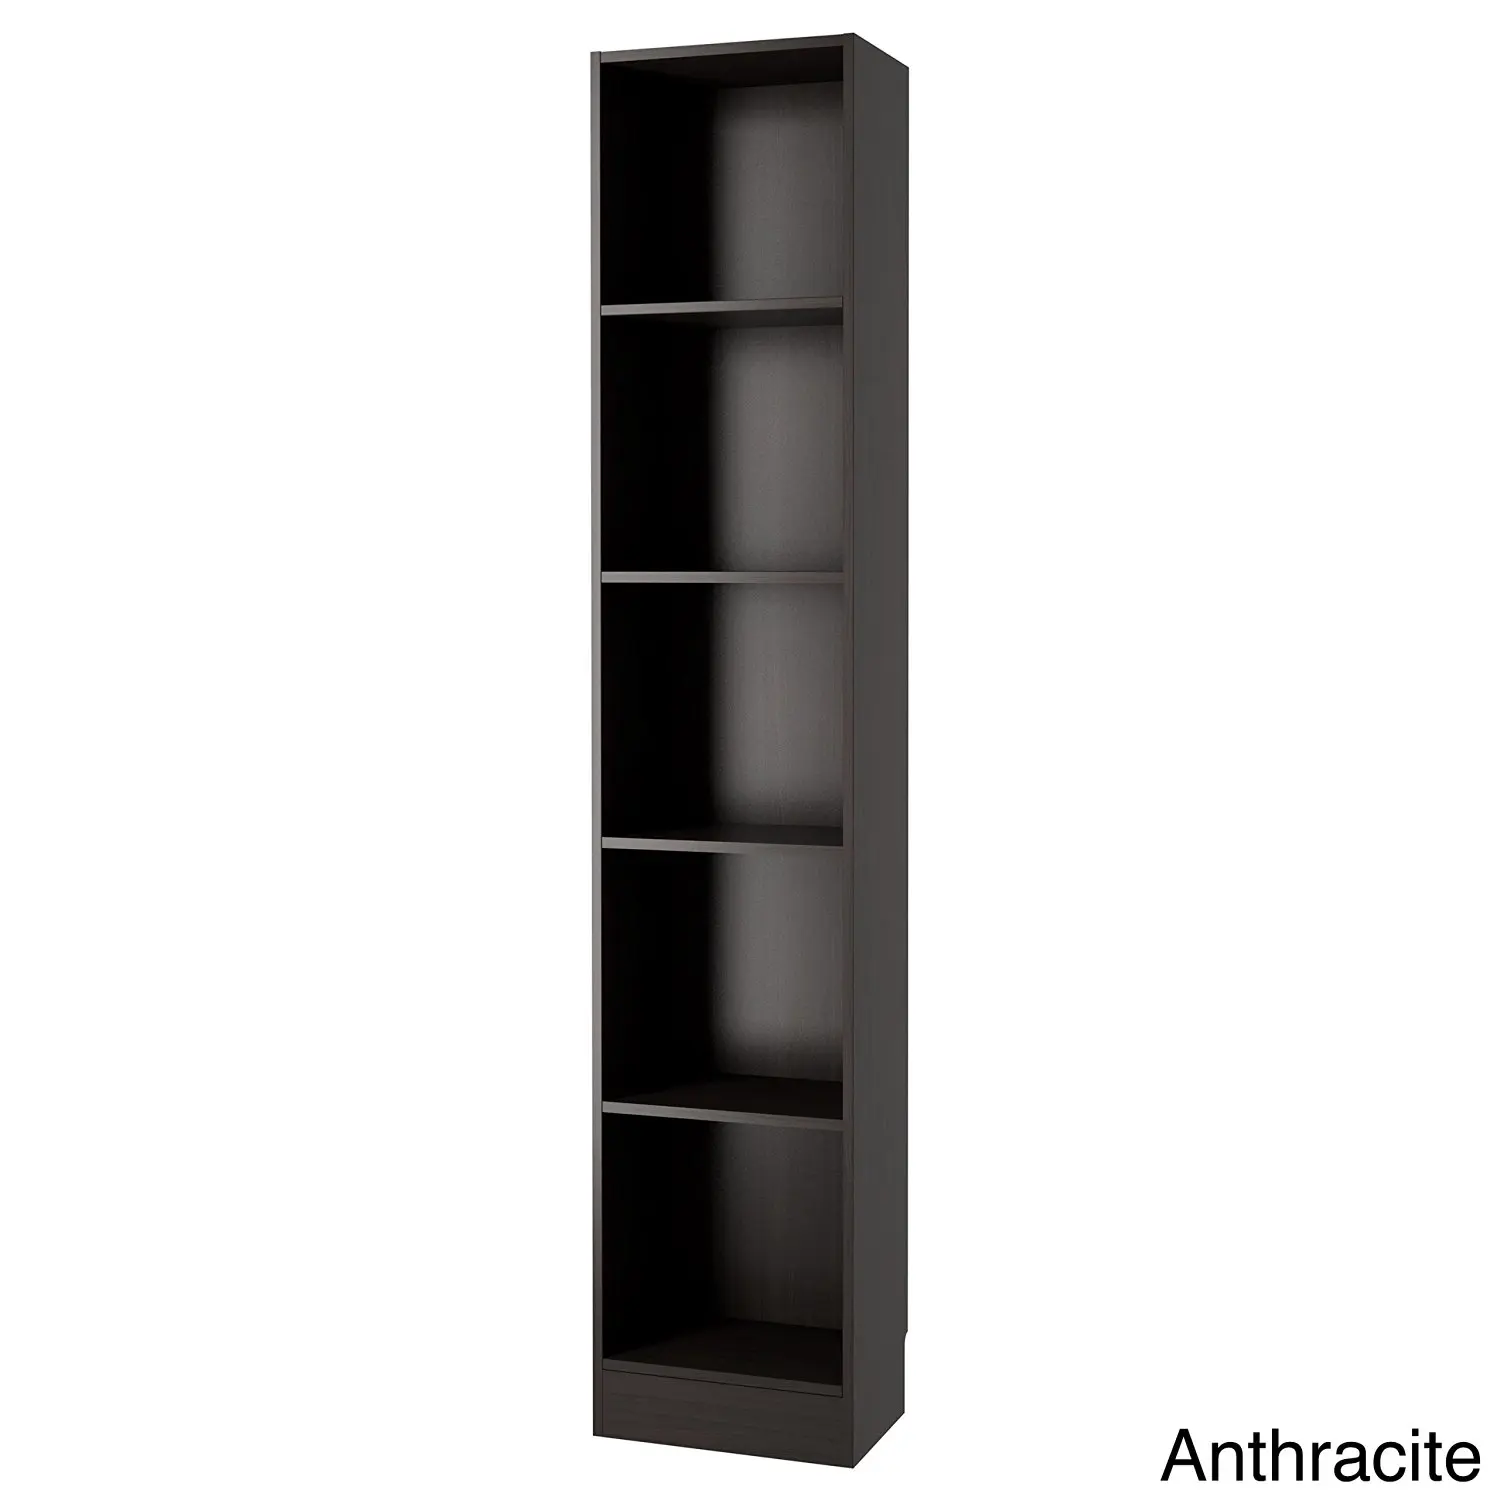 skinny black book shelf